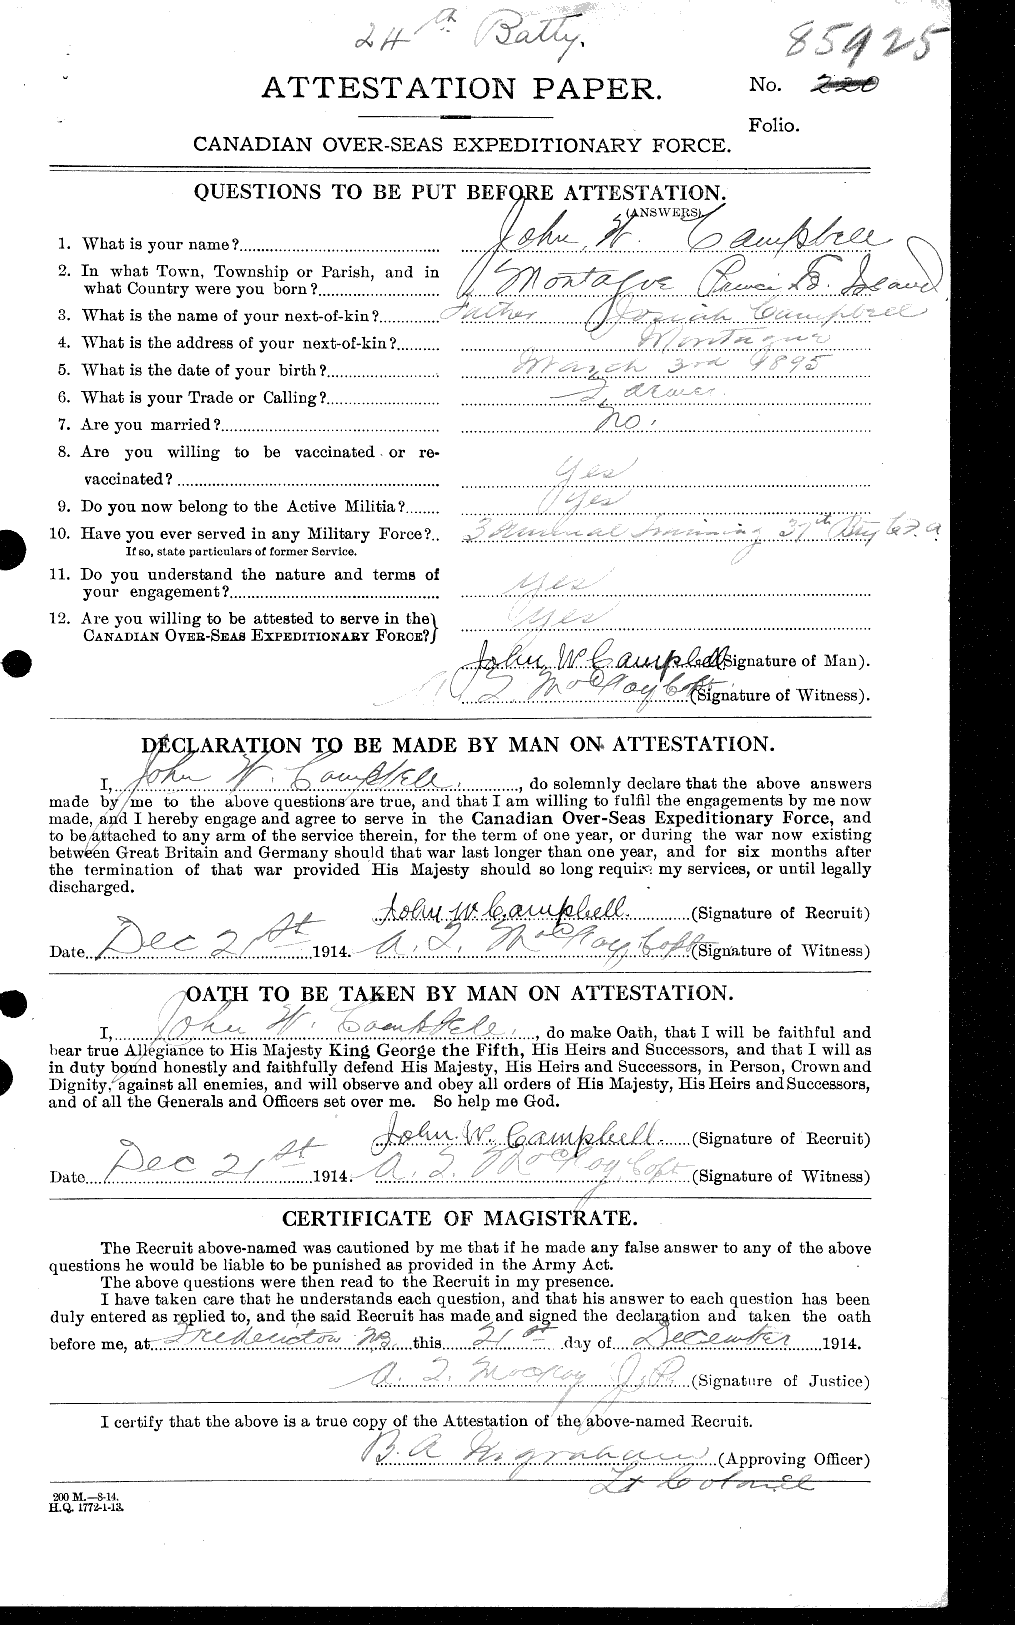 Dossiers du Personnel de la Première Guerre mondiale - CEC 003803a